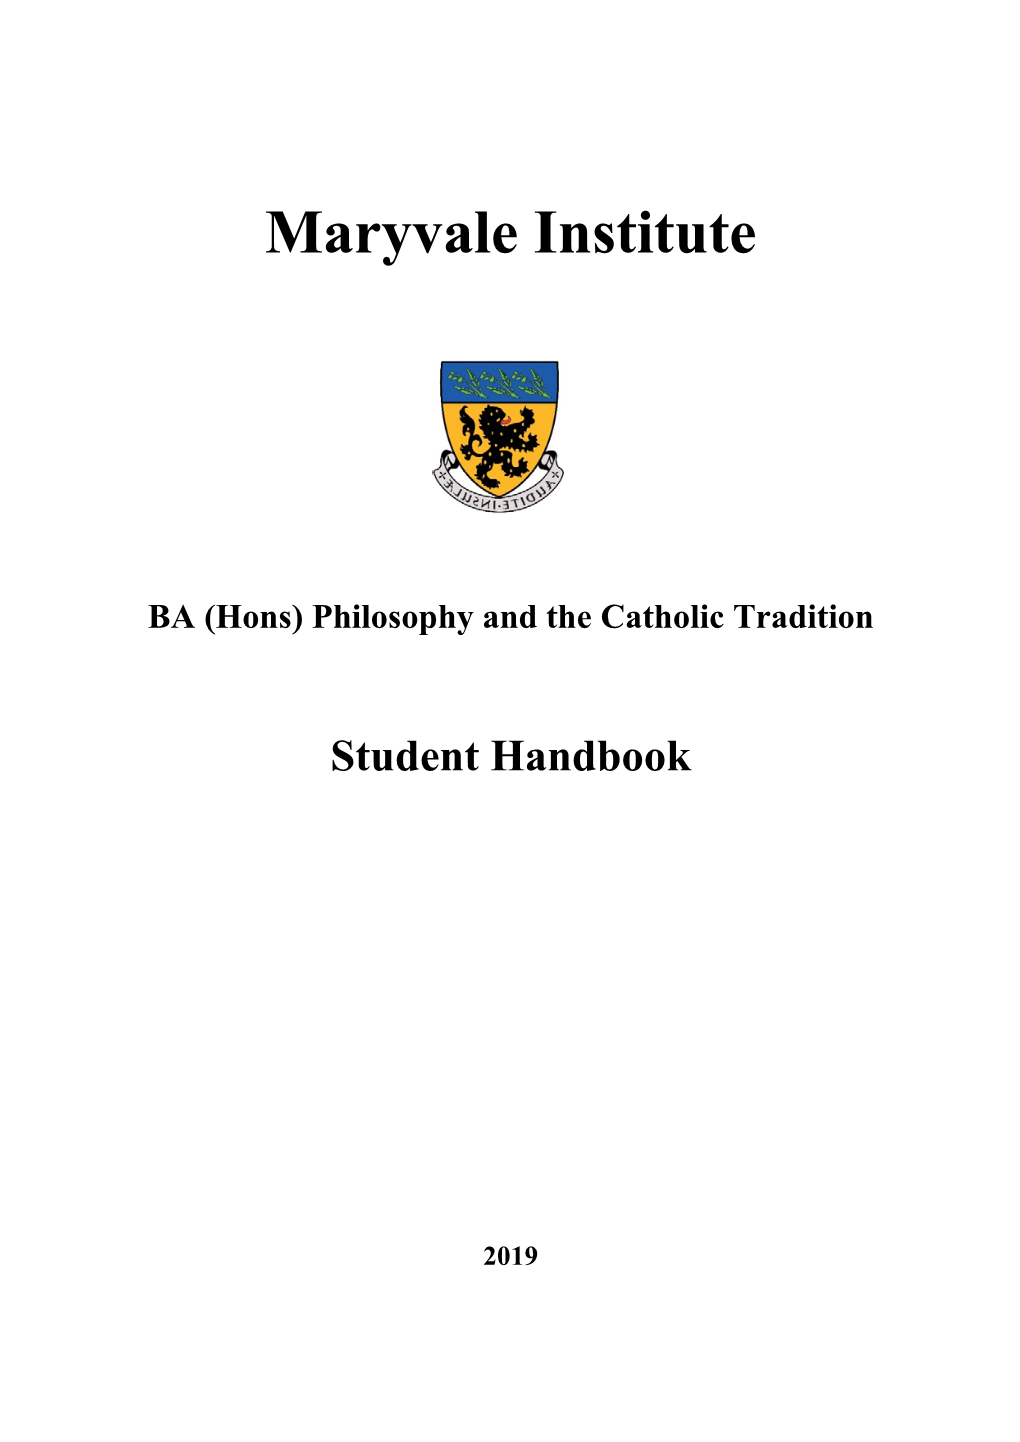 Maryvale Ba (Hons) Philosophy